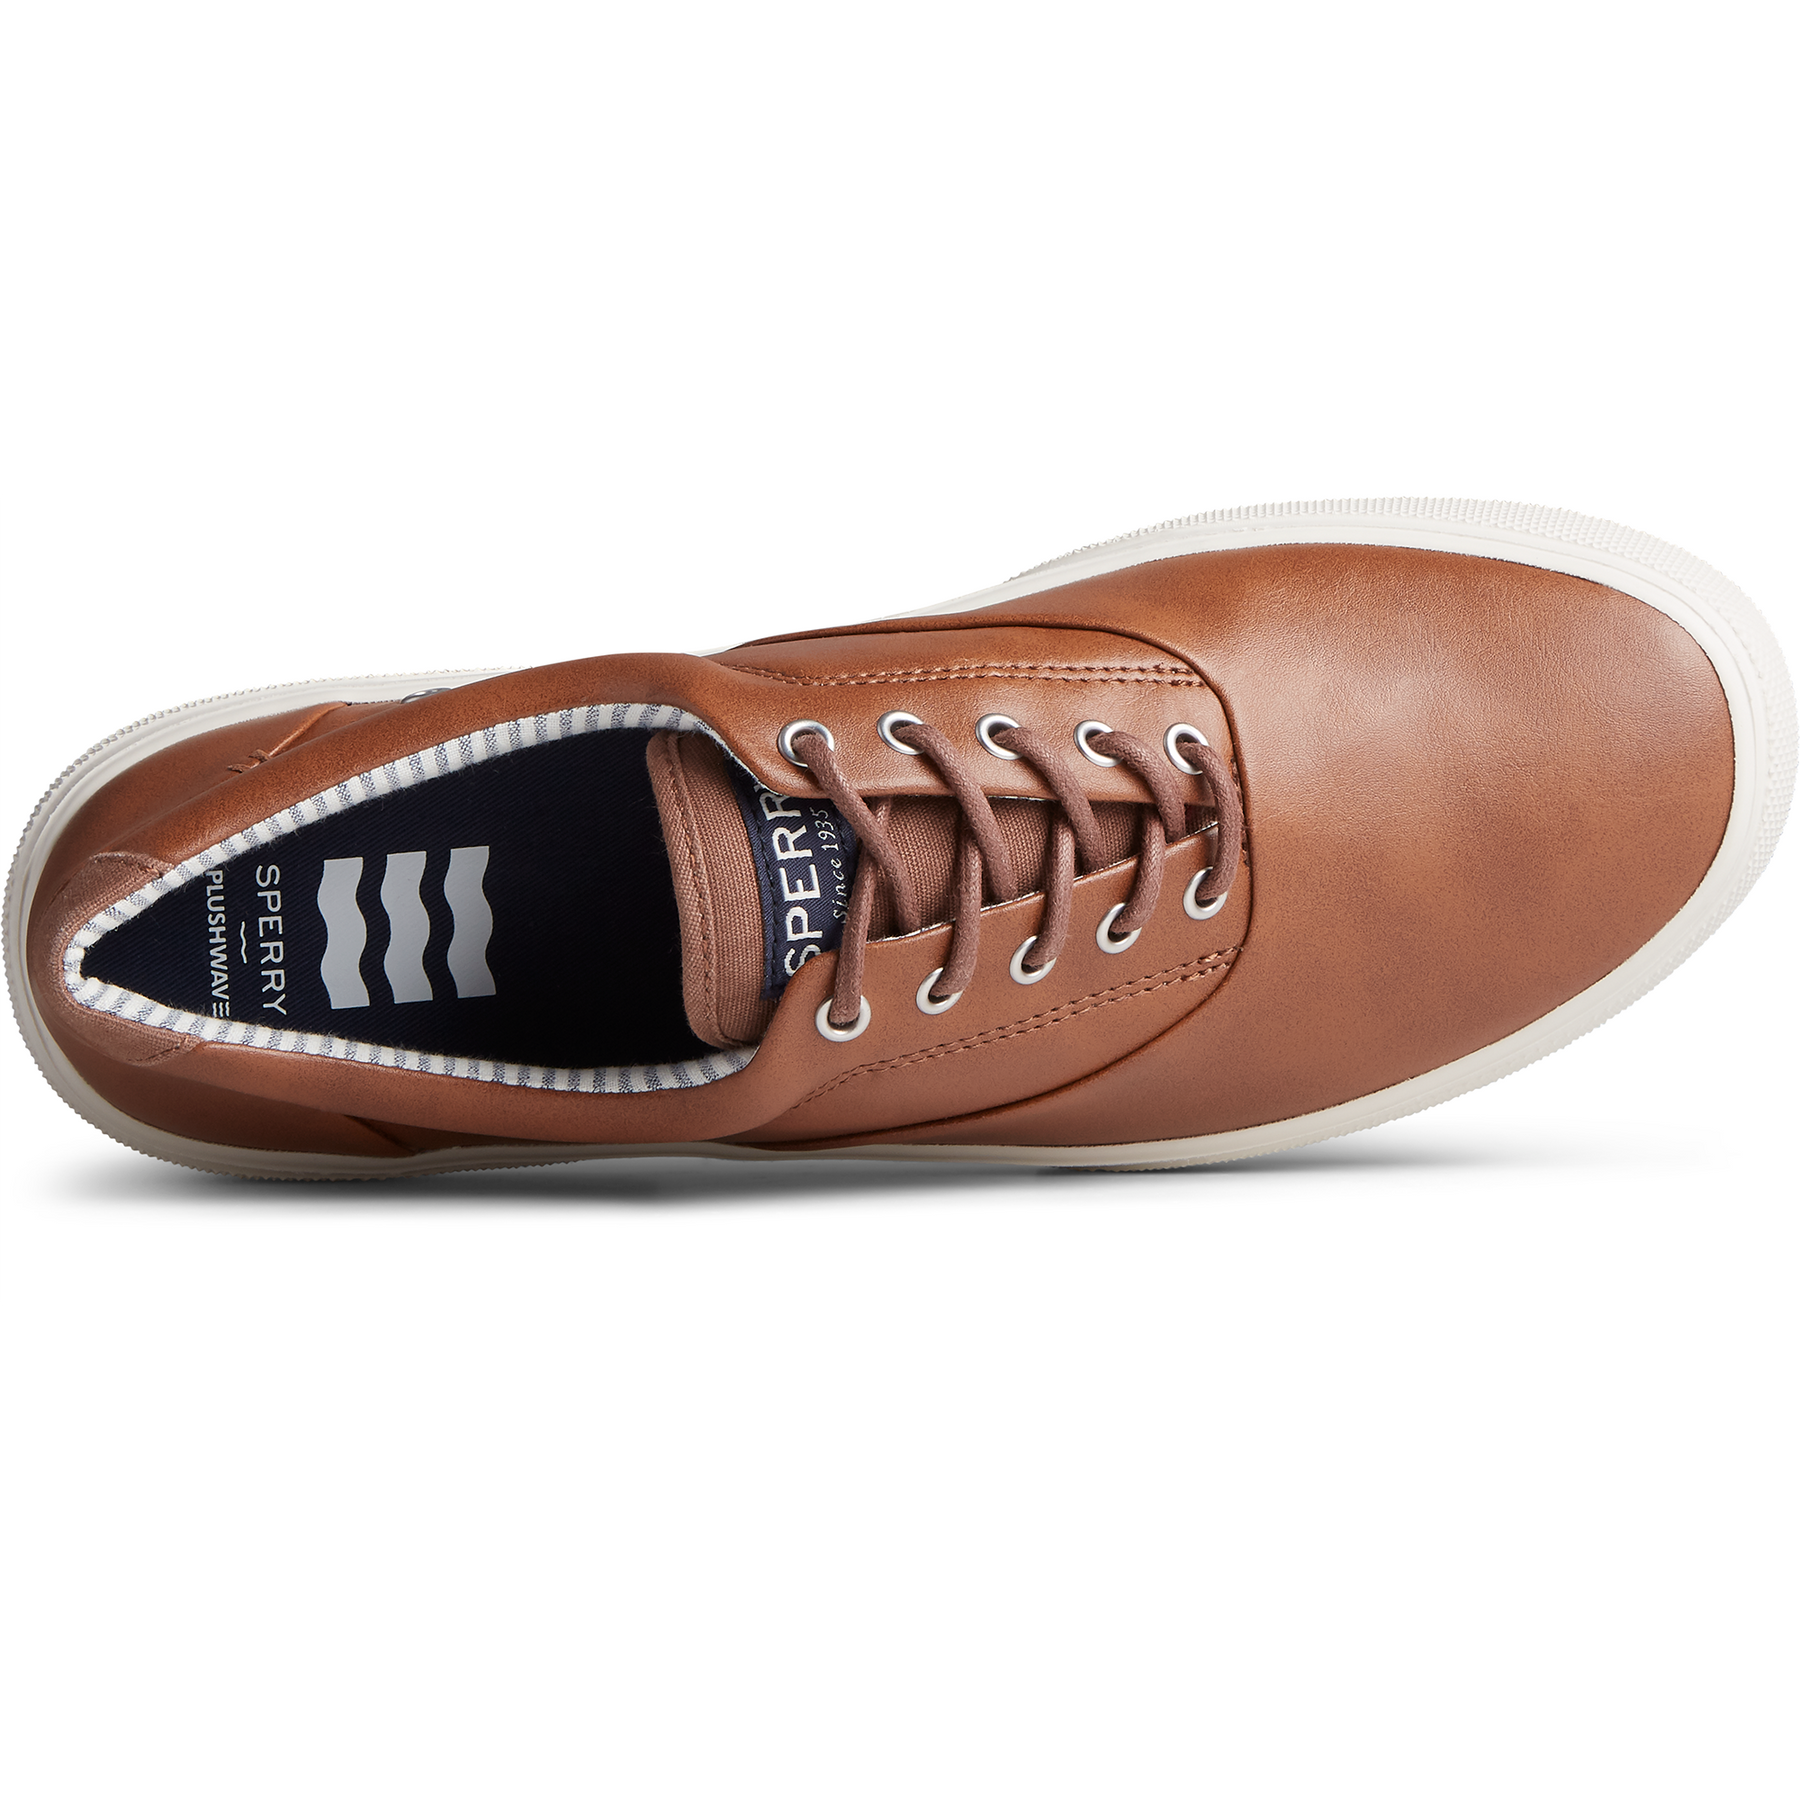 Men's Halyard Plushstep CVO Sneaker - Tan (STS23207)